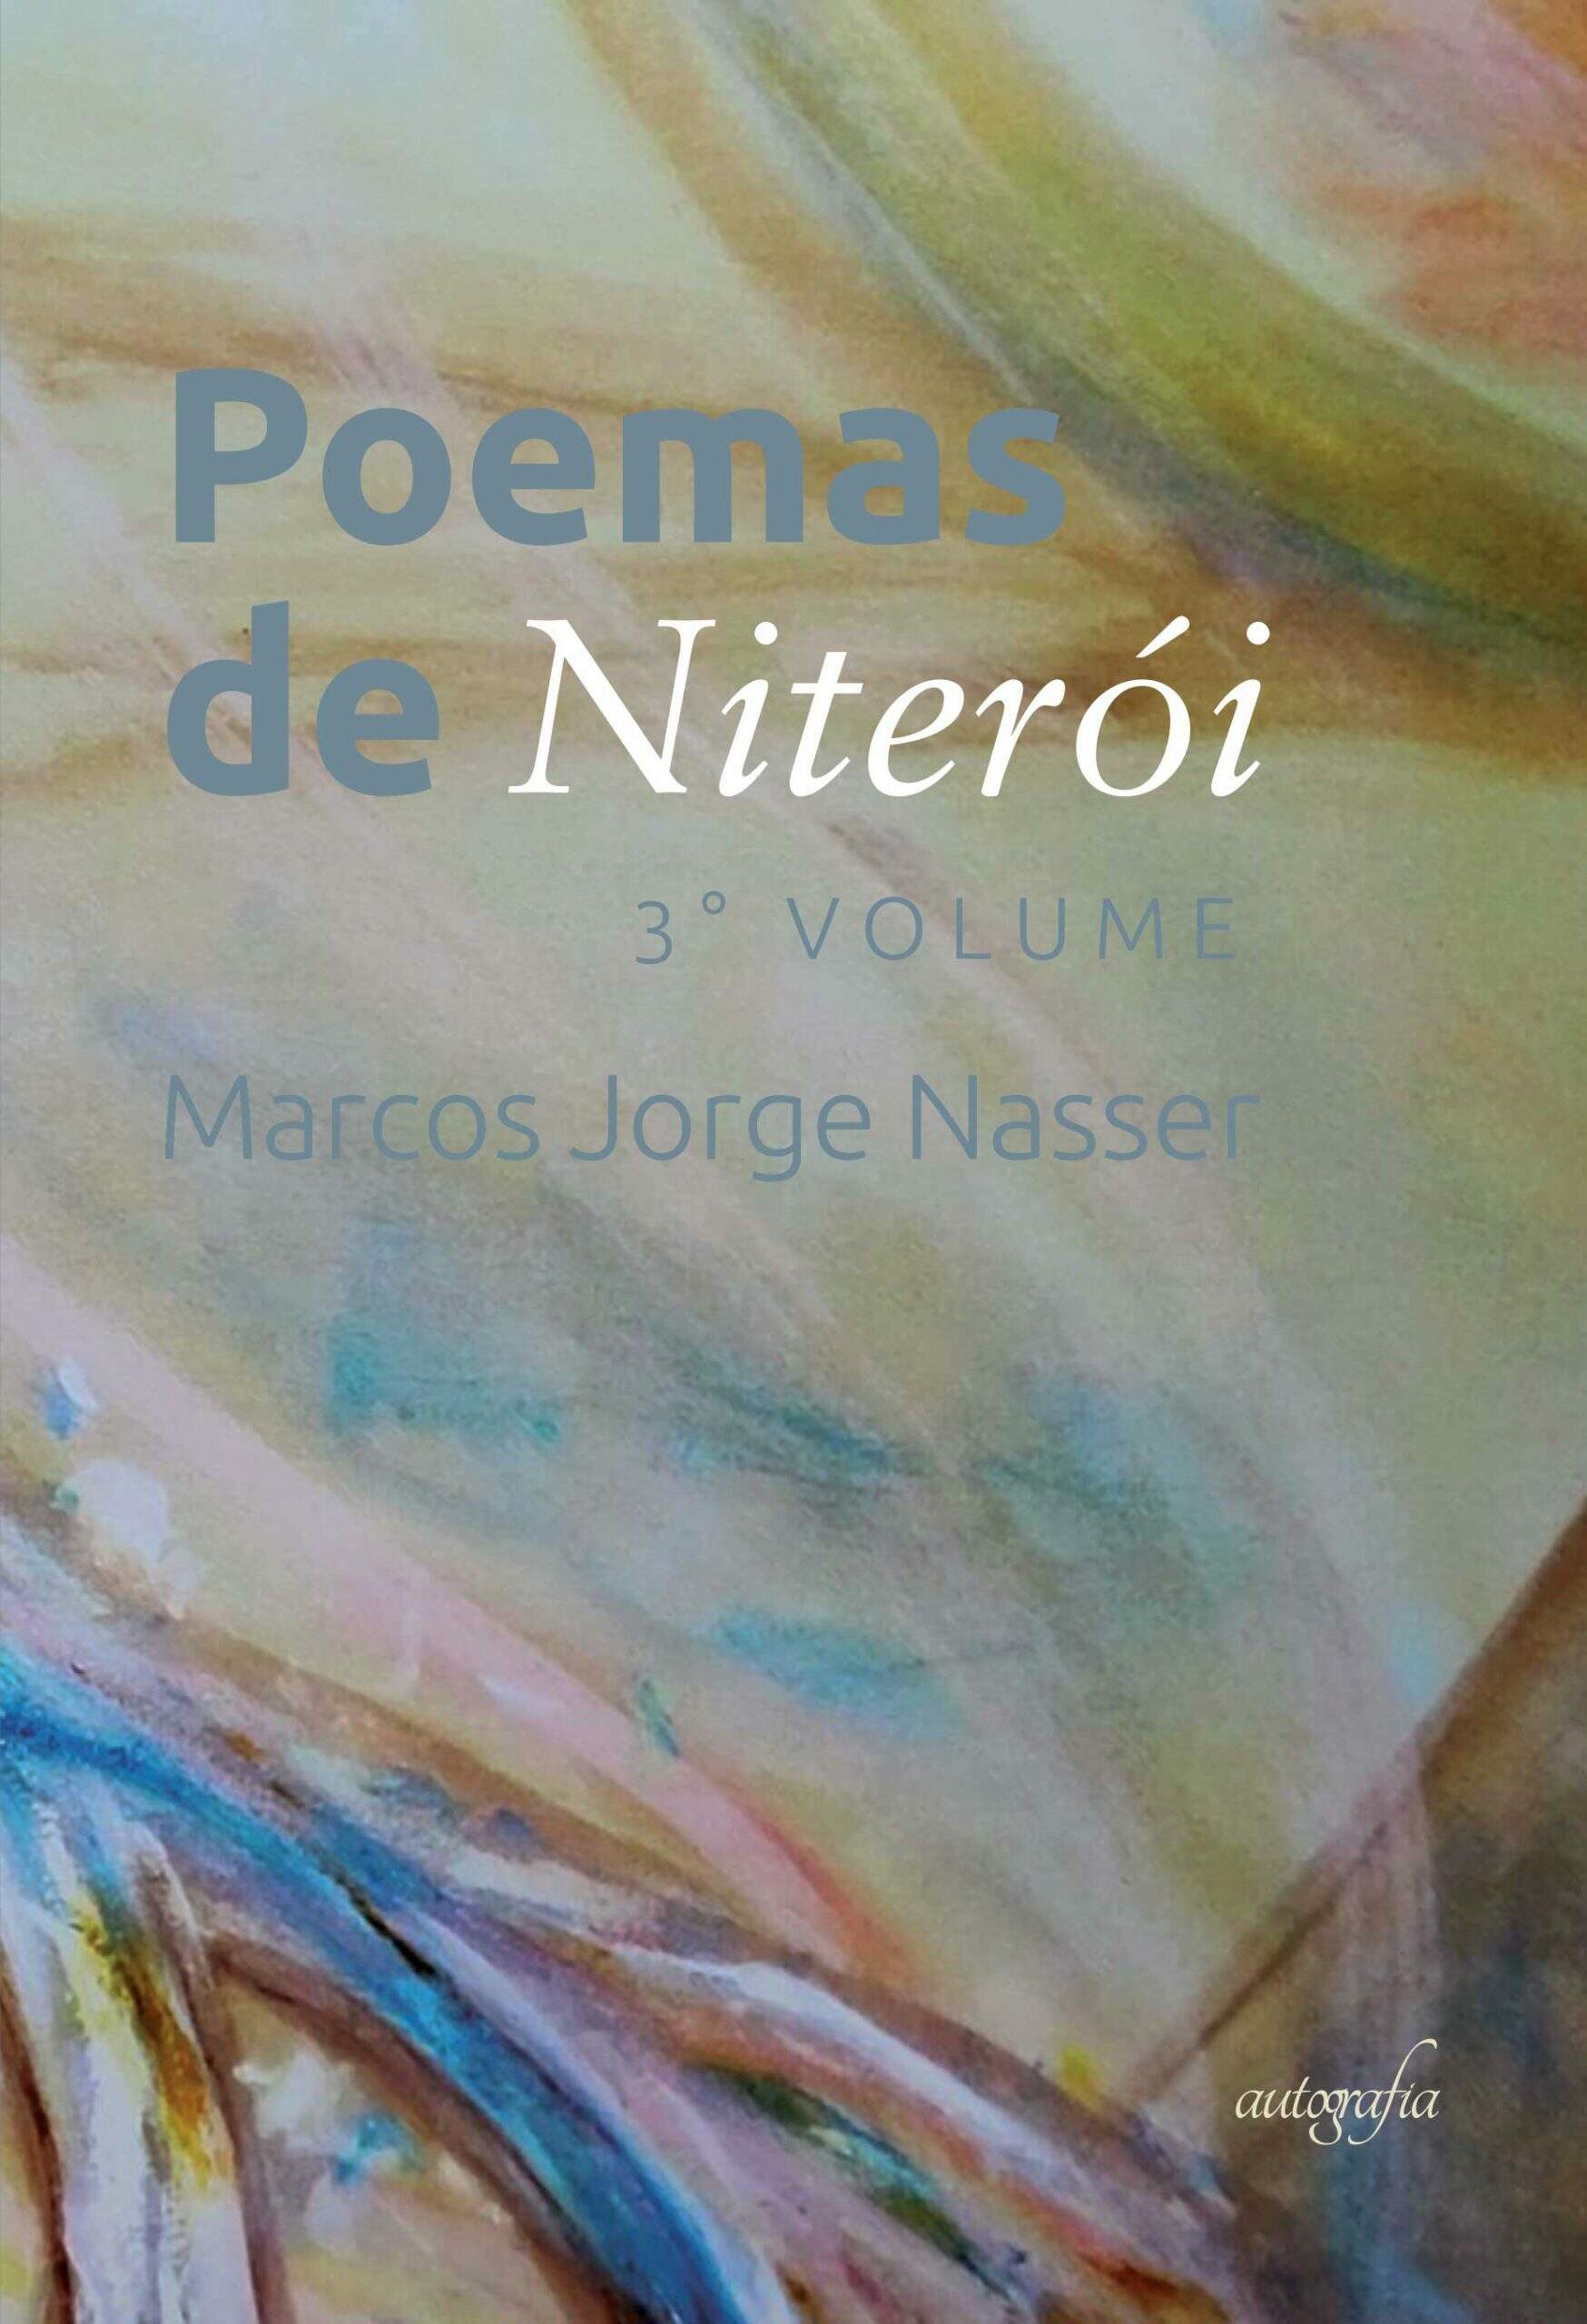 "Poemas de Niterói"